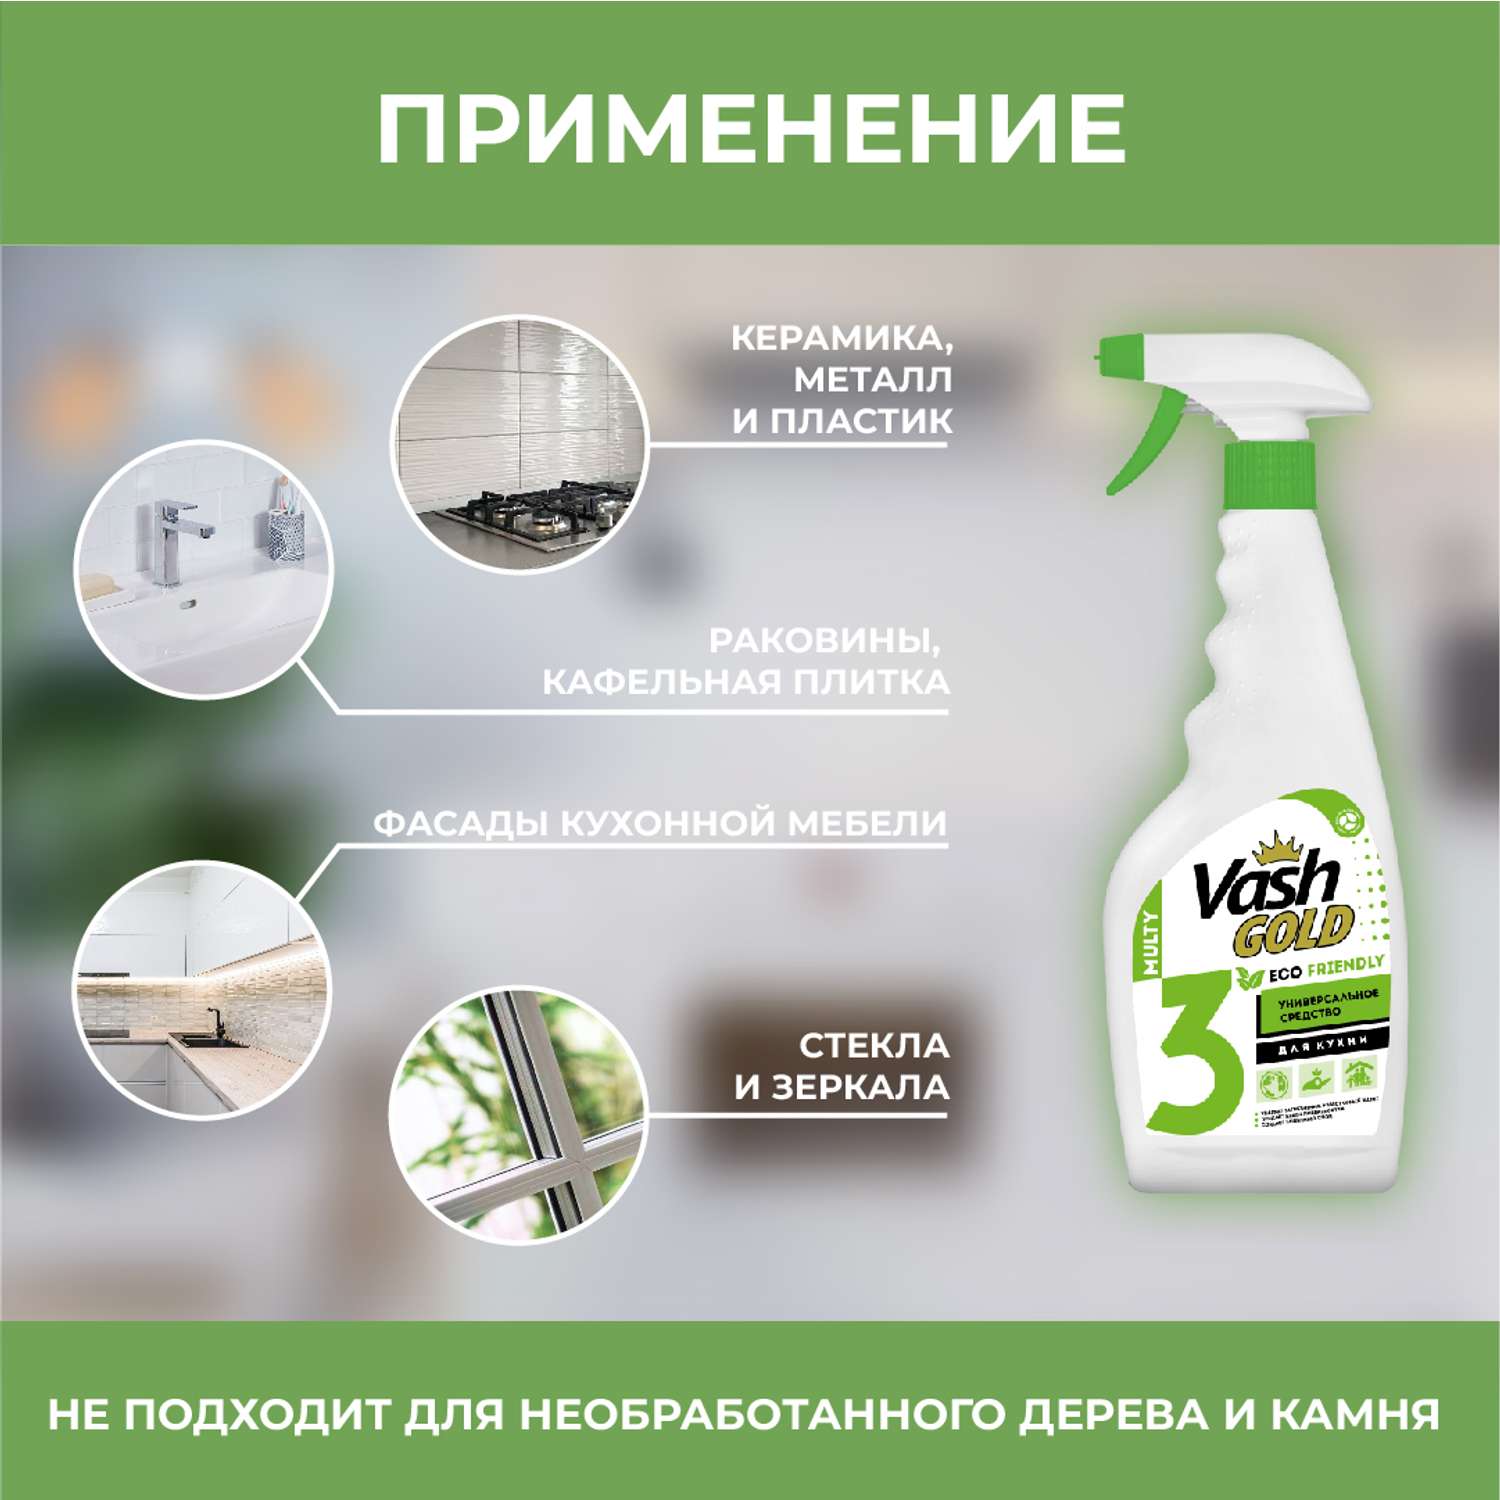 Чистящее средство Vash Gold универсальное для всего дома Eco спрей 500мл - фото 3